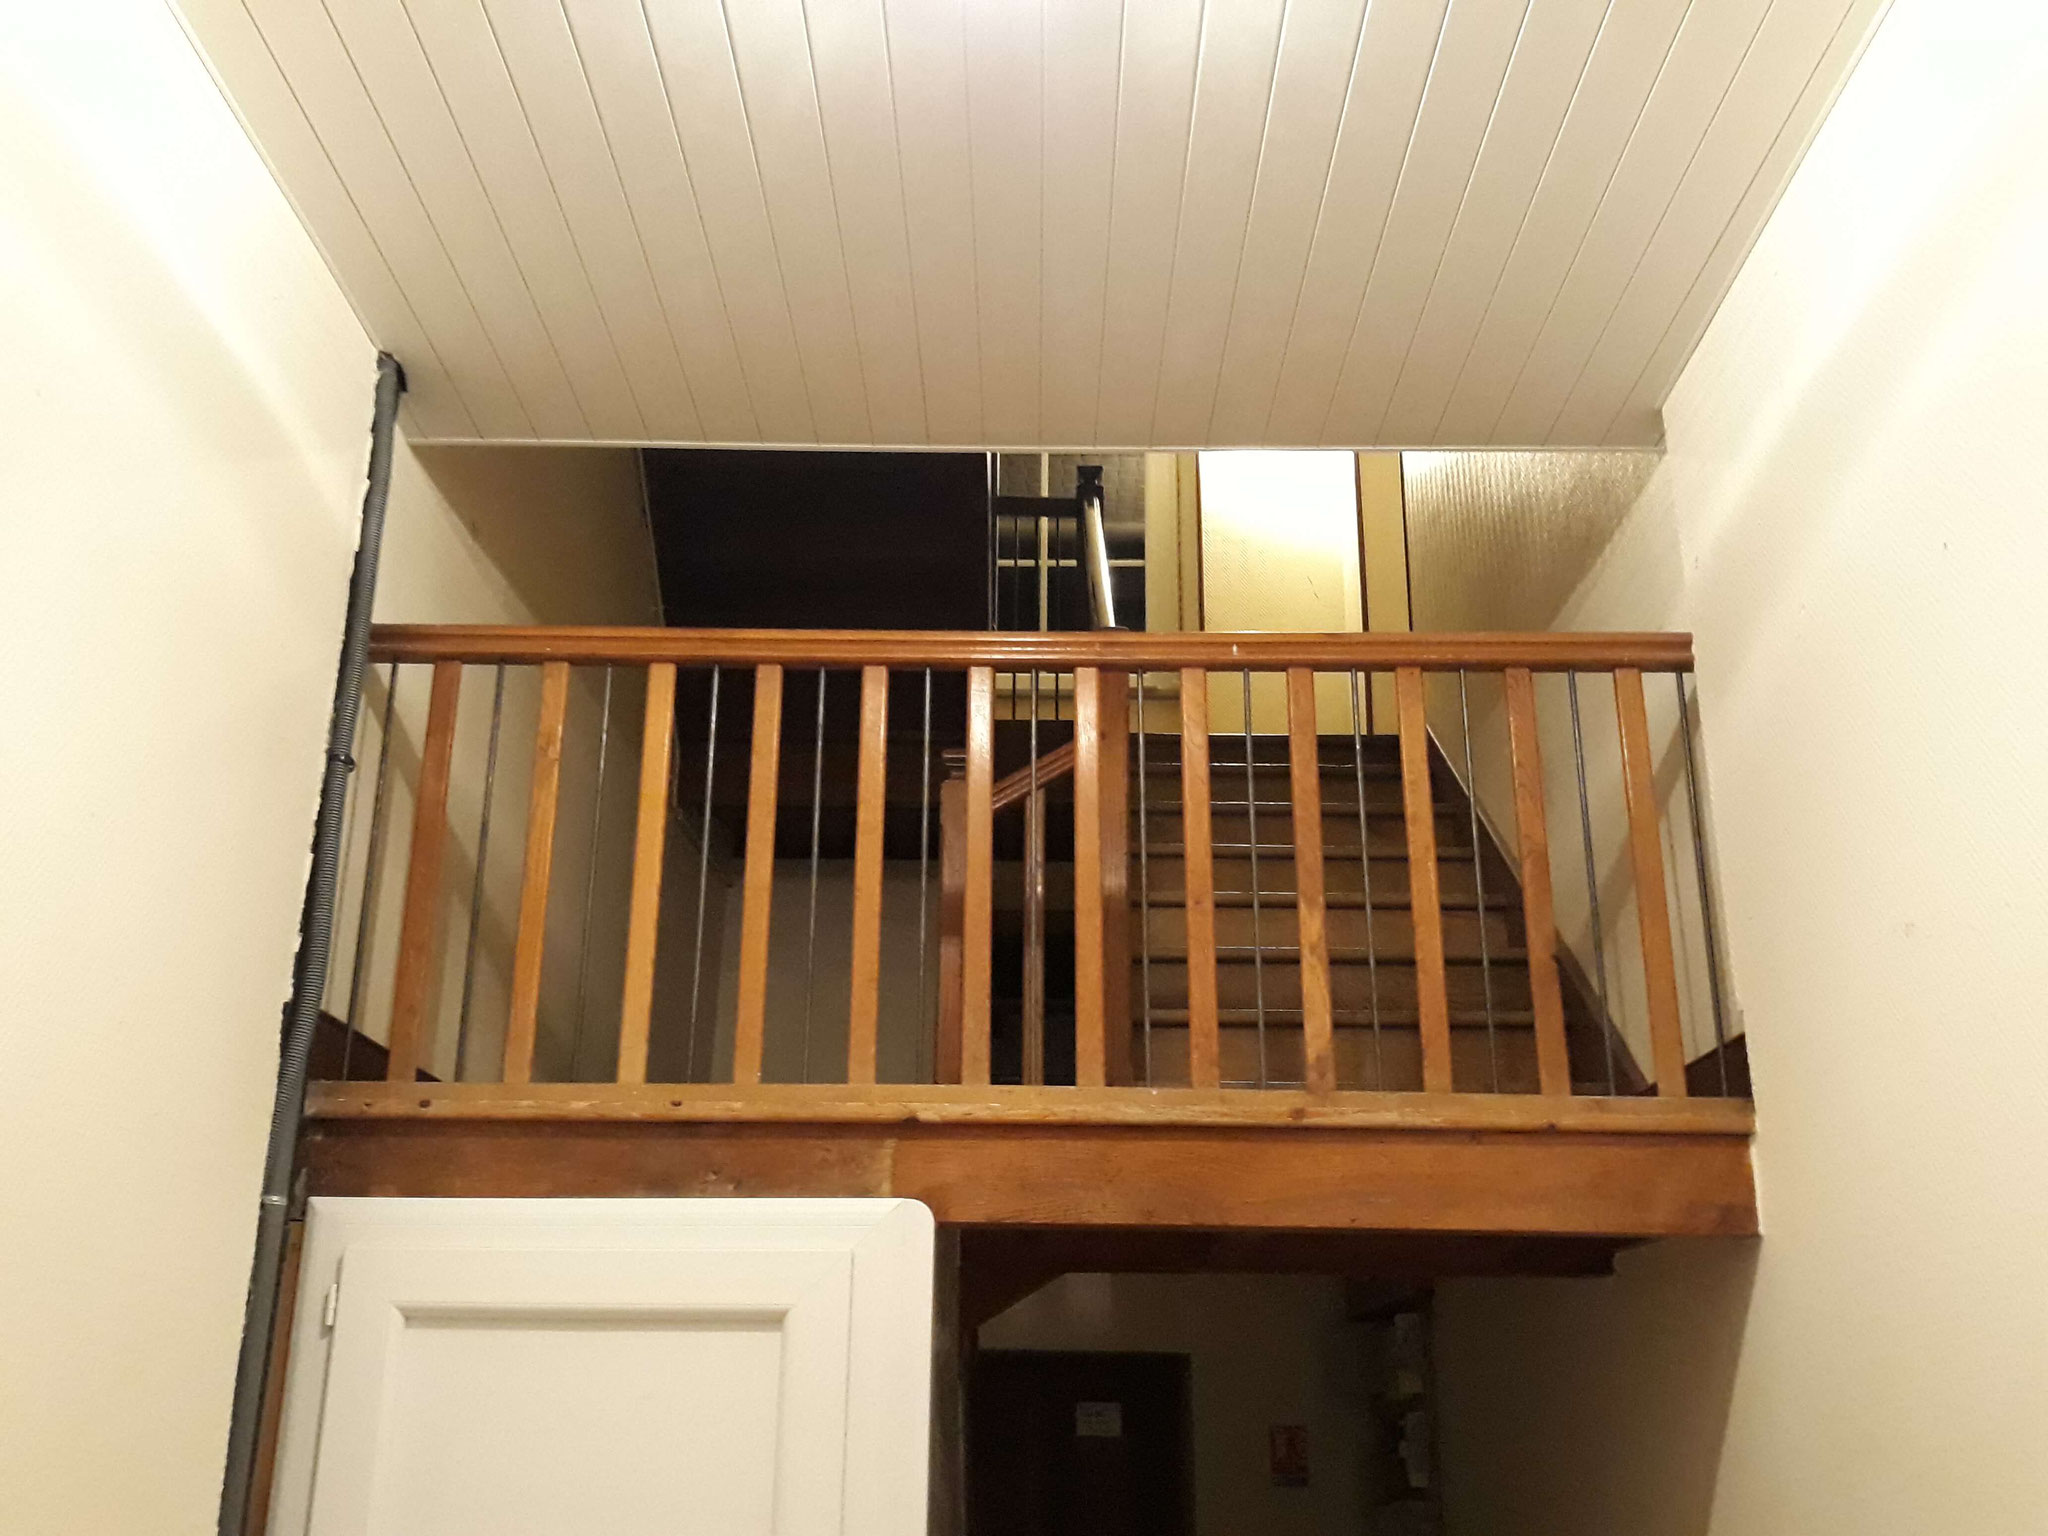 Mise aux normes des escaliers avec balustre en fer - 2